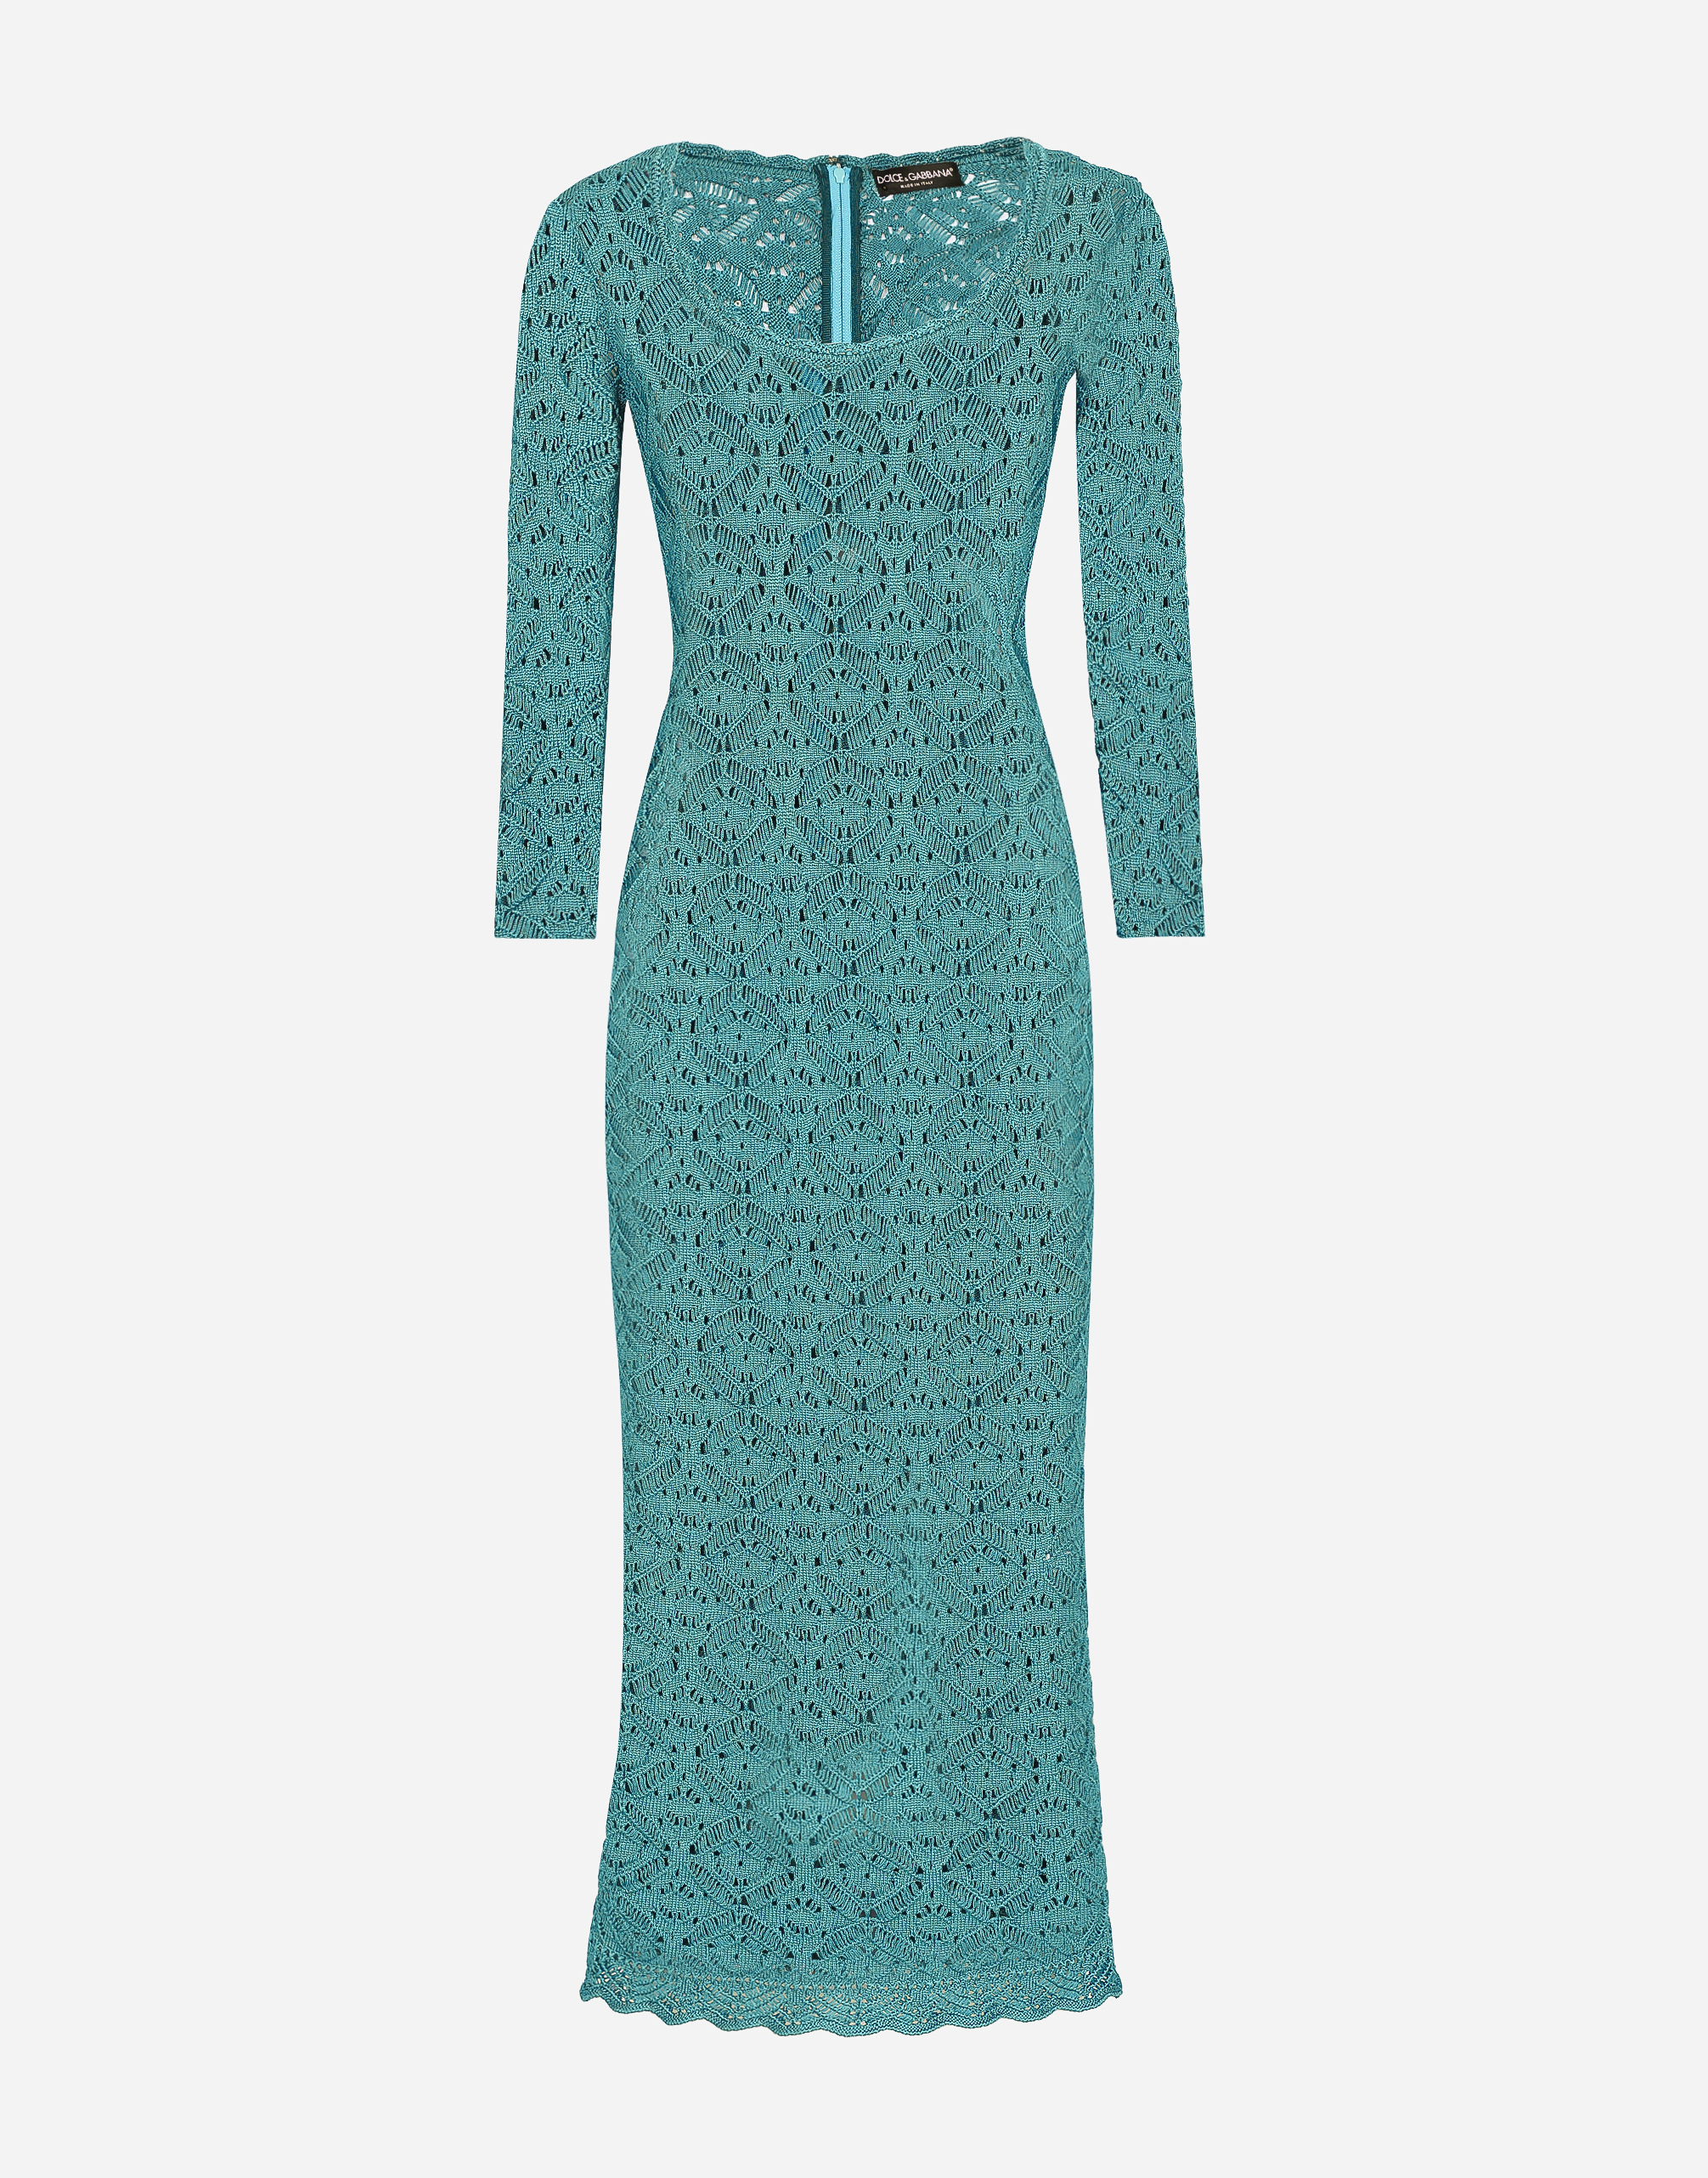 Dolce & Gabbana Crochet Calf-length Dress In Petroleum_1